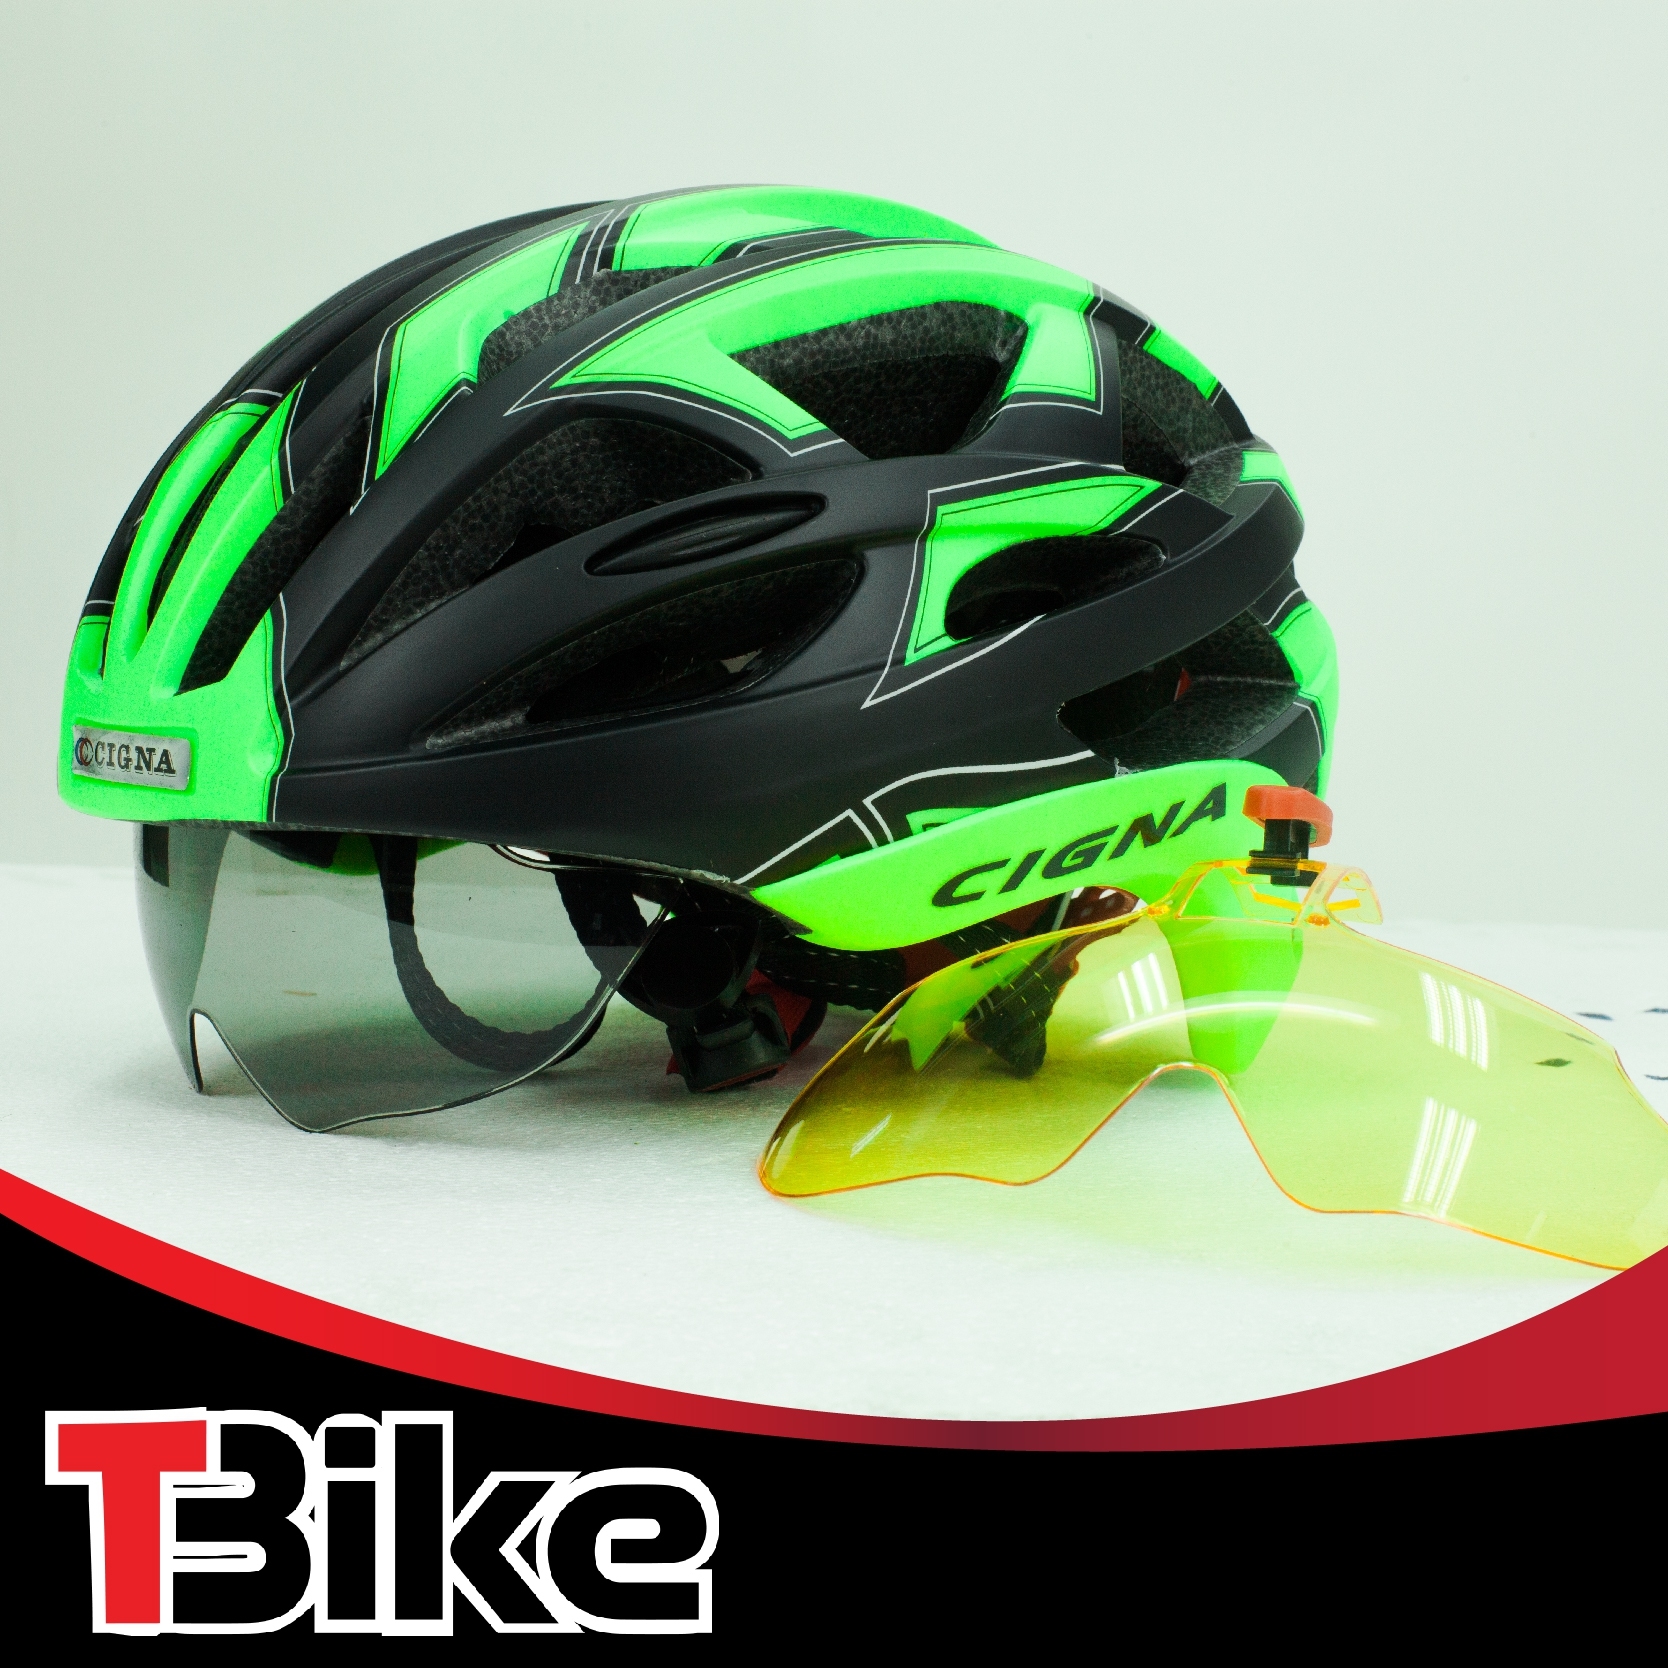 หมวกจักรยาน แบรนด์ CIGNA  ดีไซน์ใหม่ ทรงสวย aero dynamic แบบมีแว่นในตัว / กันแดด กันลมได้ ใส่แล้วเทห์ /วัสดุเกรดA ดูดซับแรงกระแทกได้ดี ทนทาน Helmet-05 ขนาด M/L 57-62